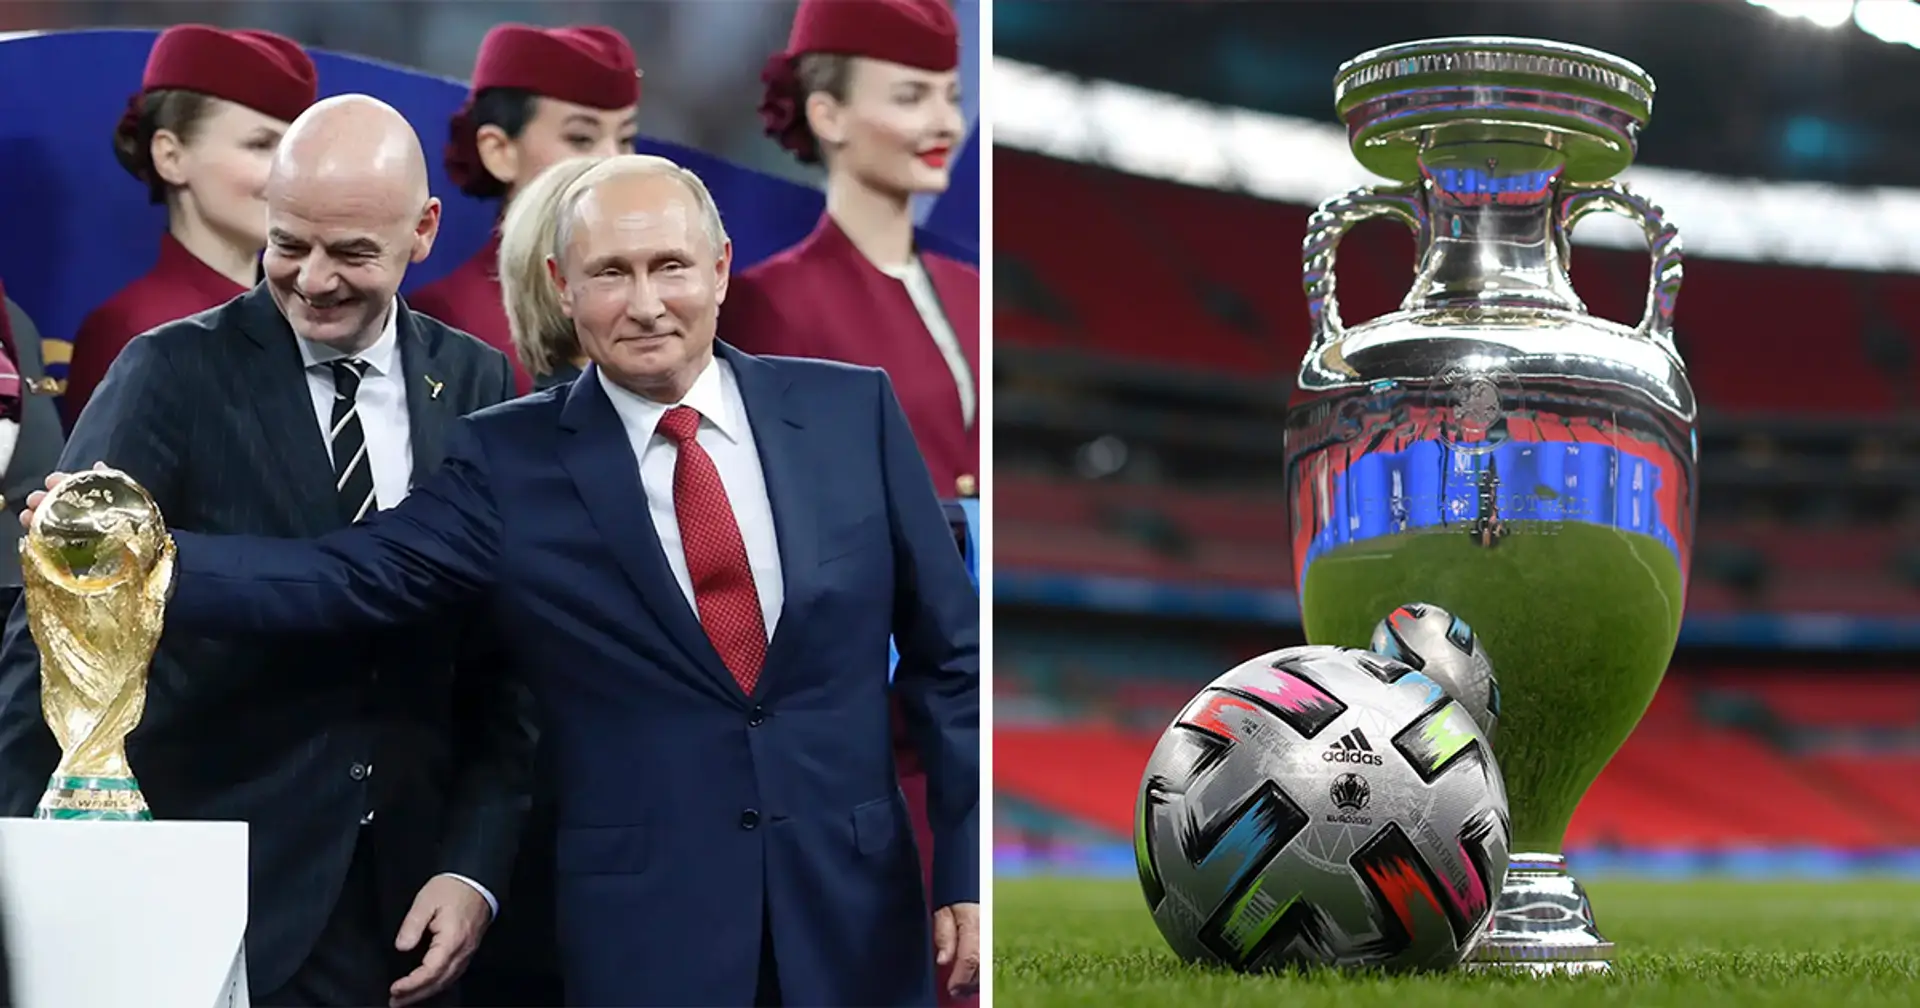 La Russia si candida per ospitare Euro 2028 o 2032 nonostante la sospensione dal calcio internazionale